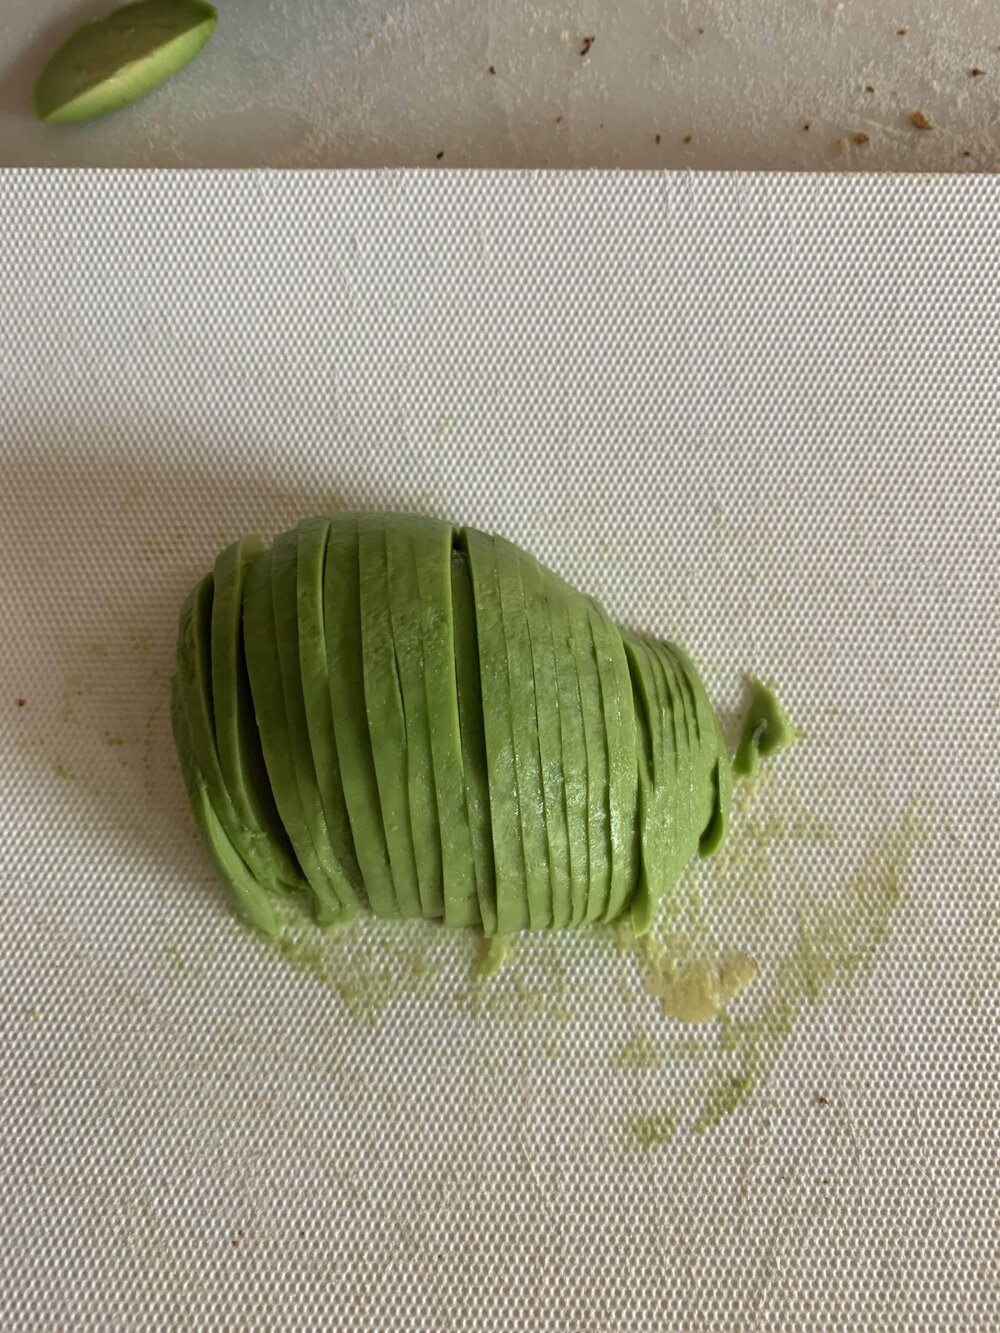 Step 4: Slice the avocado thinly